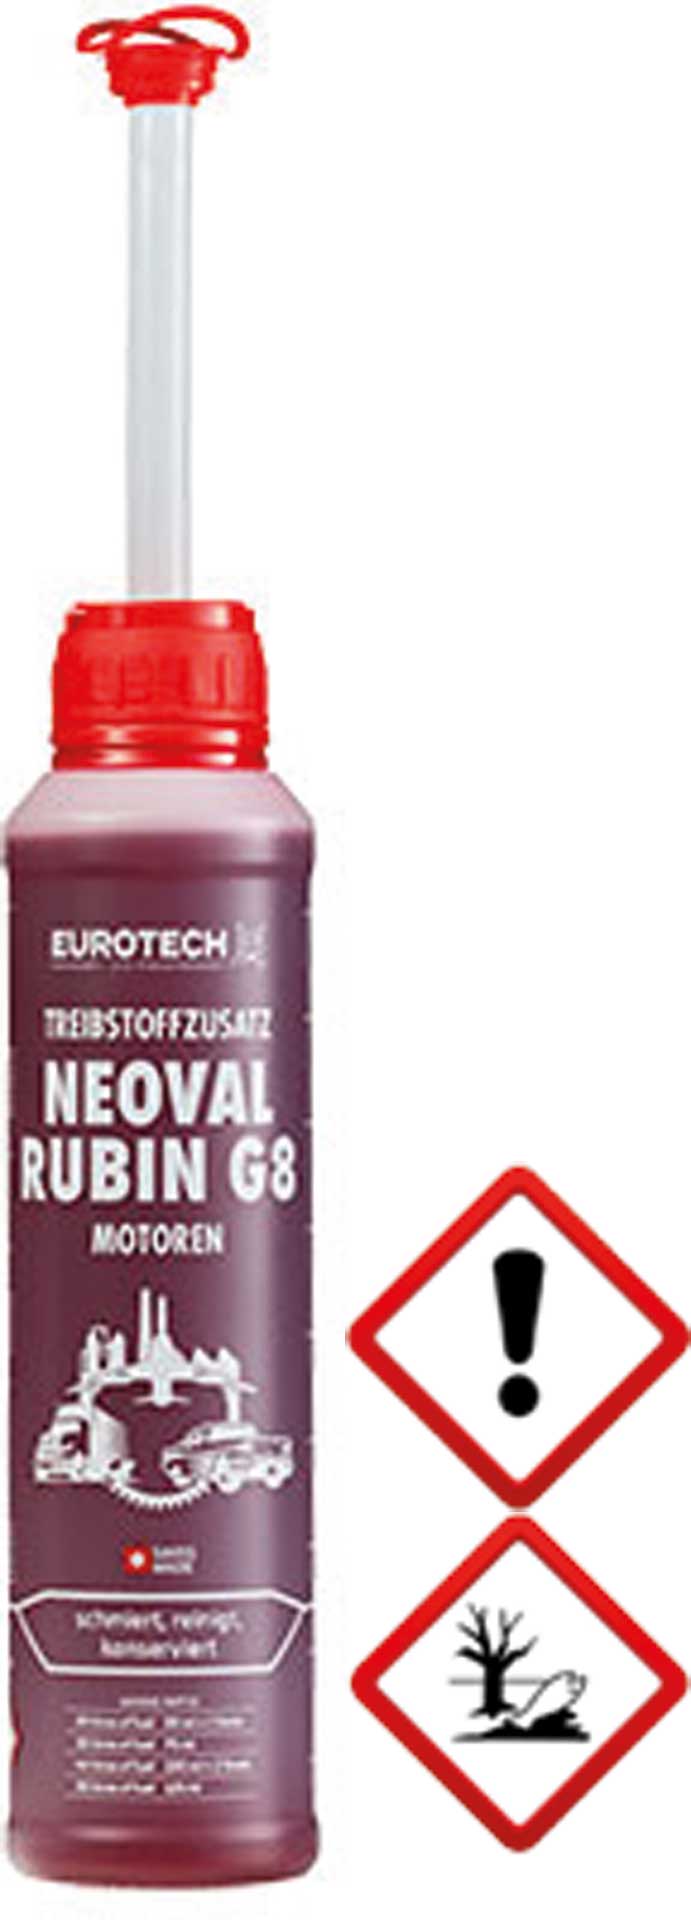 EUROTECH NEOVAL RUBIN G8 MOTEURR 500ML